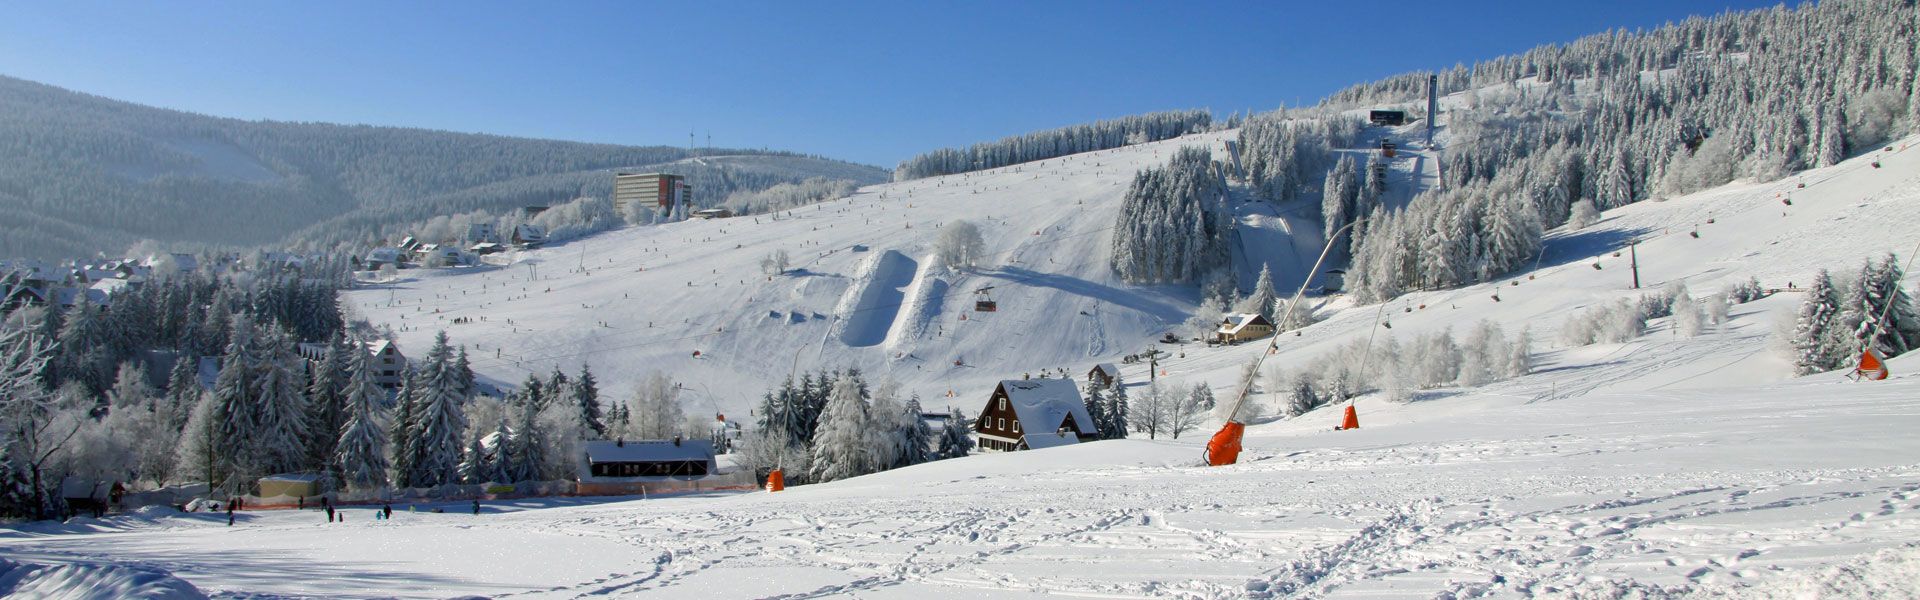 Skihang vom Fichtelberg in Oberwiesenthal